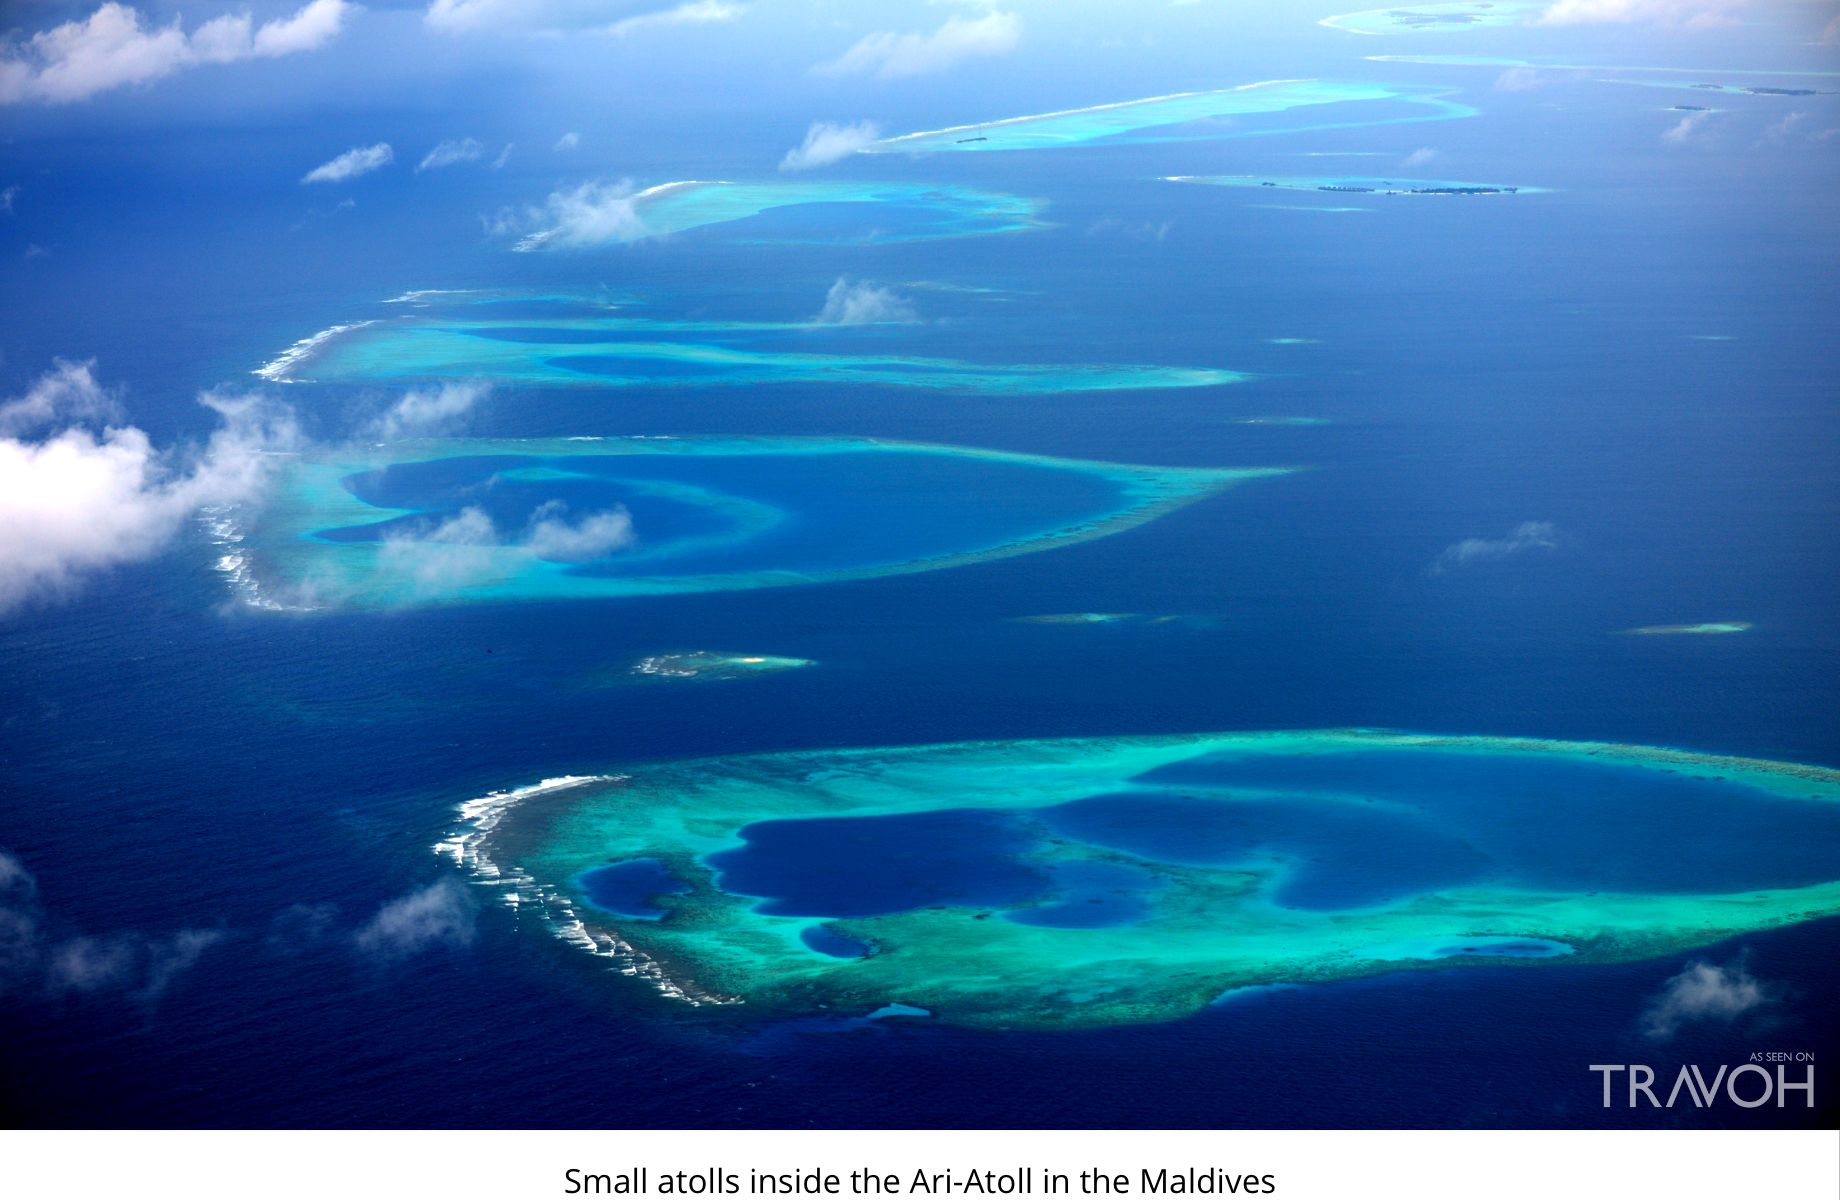 Small atolls inside the Ari-Atoll in the Maldives